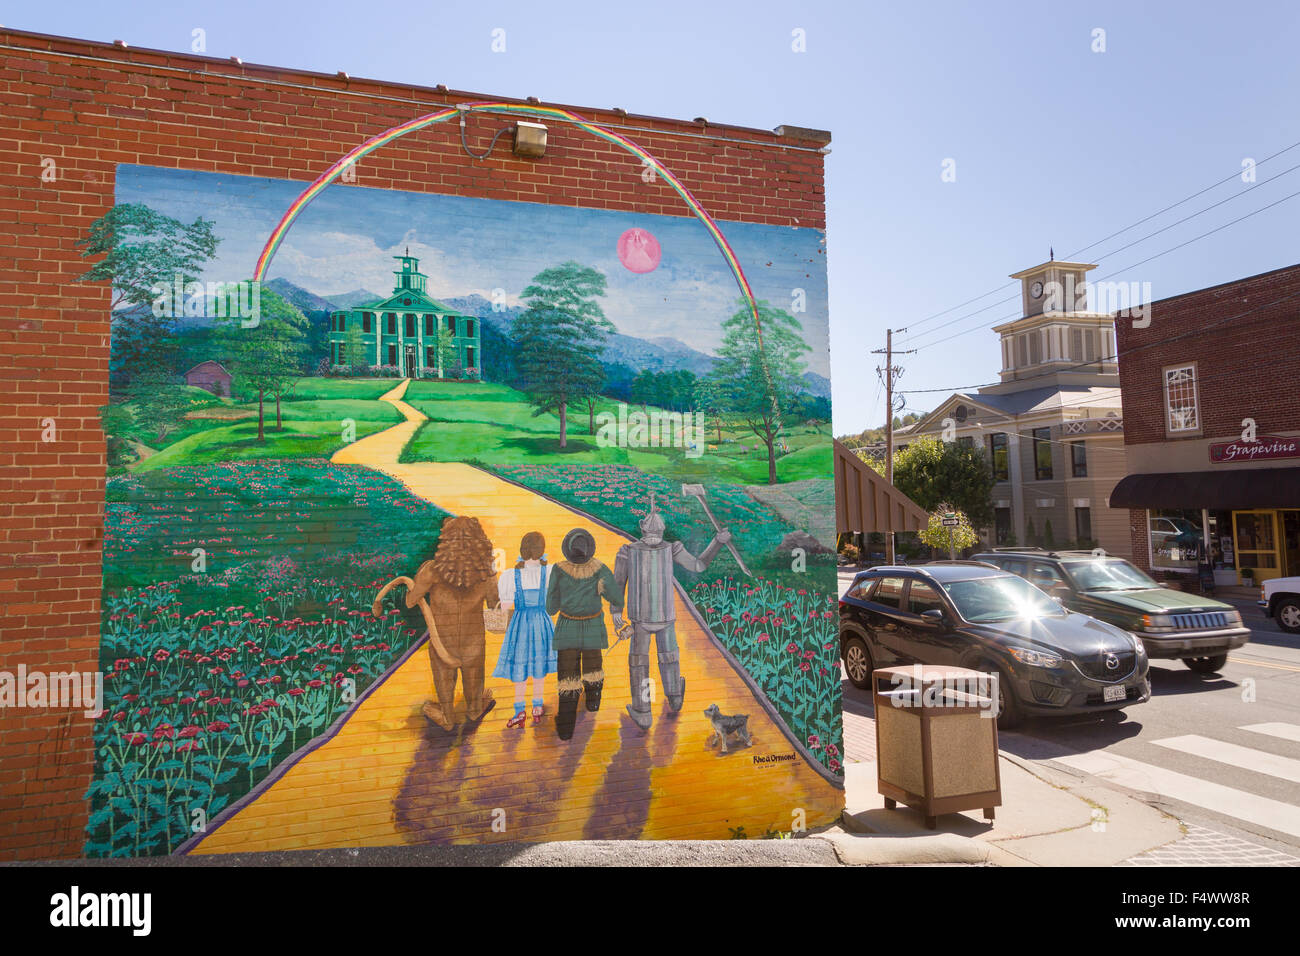 Un murale del Wizard of Oz dipinta sulla fiancata di un edificio che si trova nel piccolo villaggio di Burnsville, North Carolina. Burnsville è l'inizio del sentiero del quilt che onora la trapunta fatta a mano i disegni della Appalachian rurale regione. Foto Stock